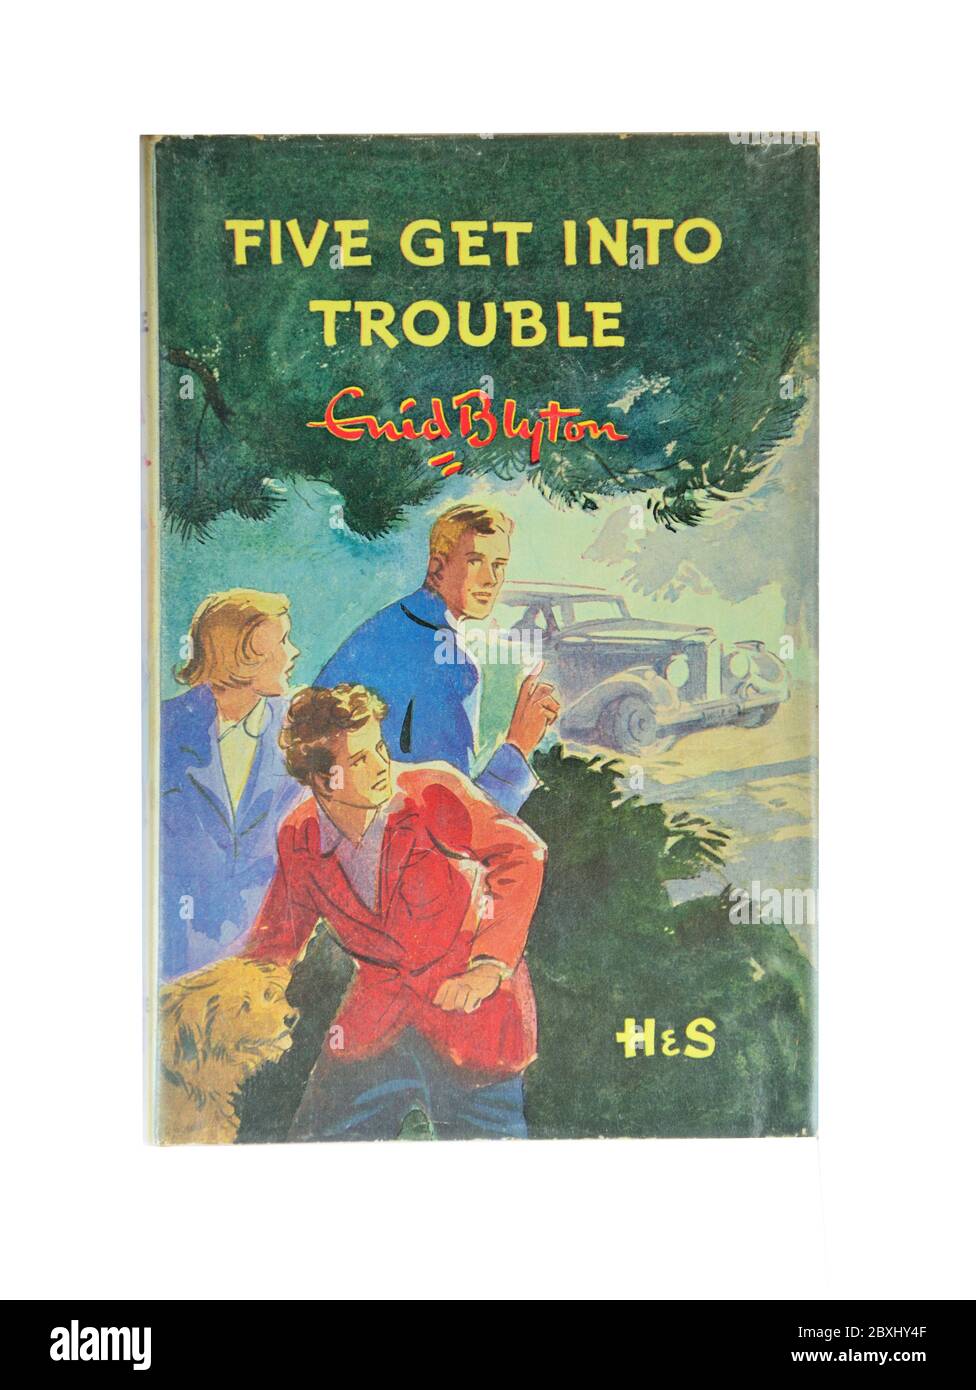 Enid Blyton 'Five Get into trouble' huitième livre célèbre de cinq, Ascot, Berkshire, Angleterre, Royaume-Uni Banque D'Images